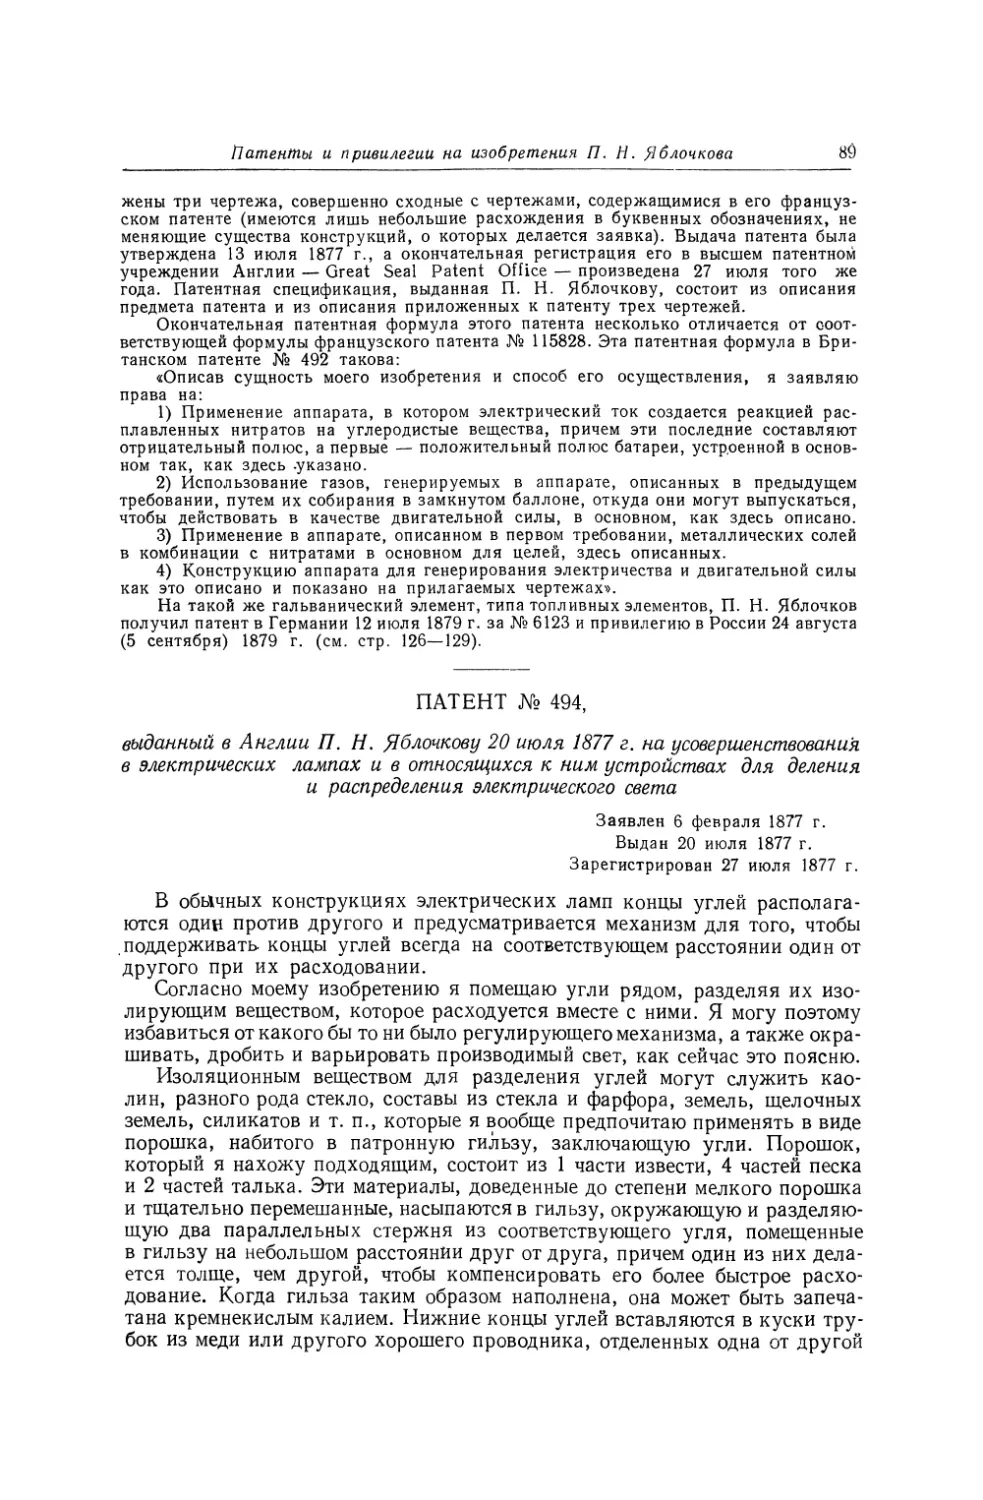 Патент № 494, выданный в Англии П. Н. Яблочкову 20 июля 1877 г. на усовершенствования в электрических лампах и в относящихся к ним устройствах для деления и распределения электрического света